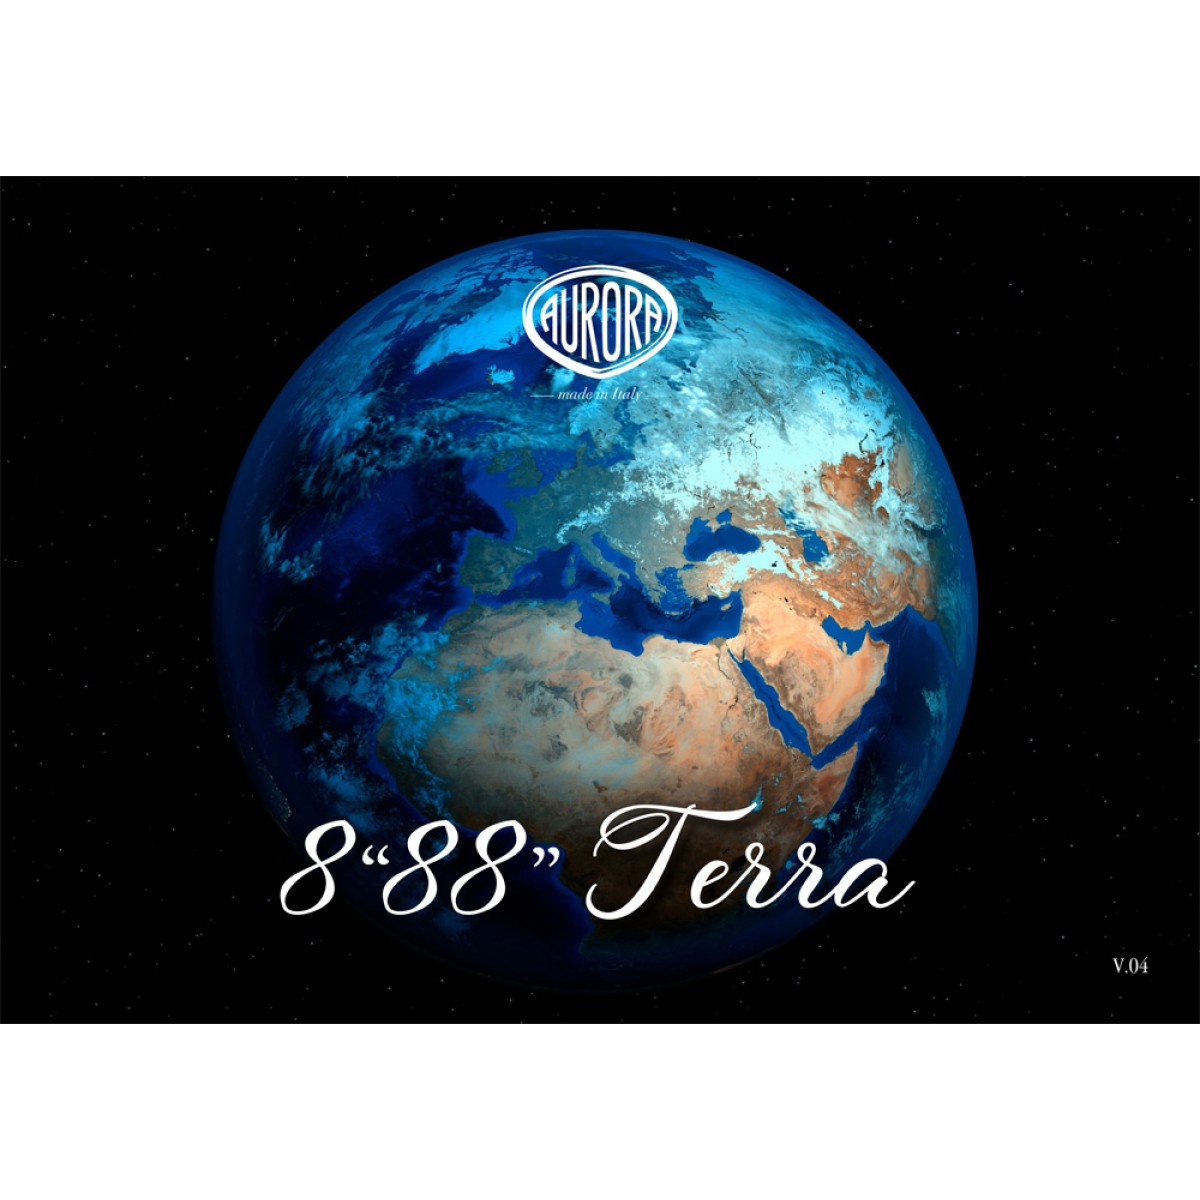 Aurora - 8"88" Terra - Stilografica